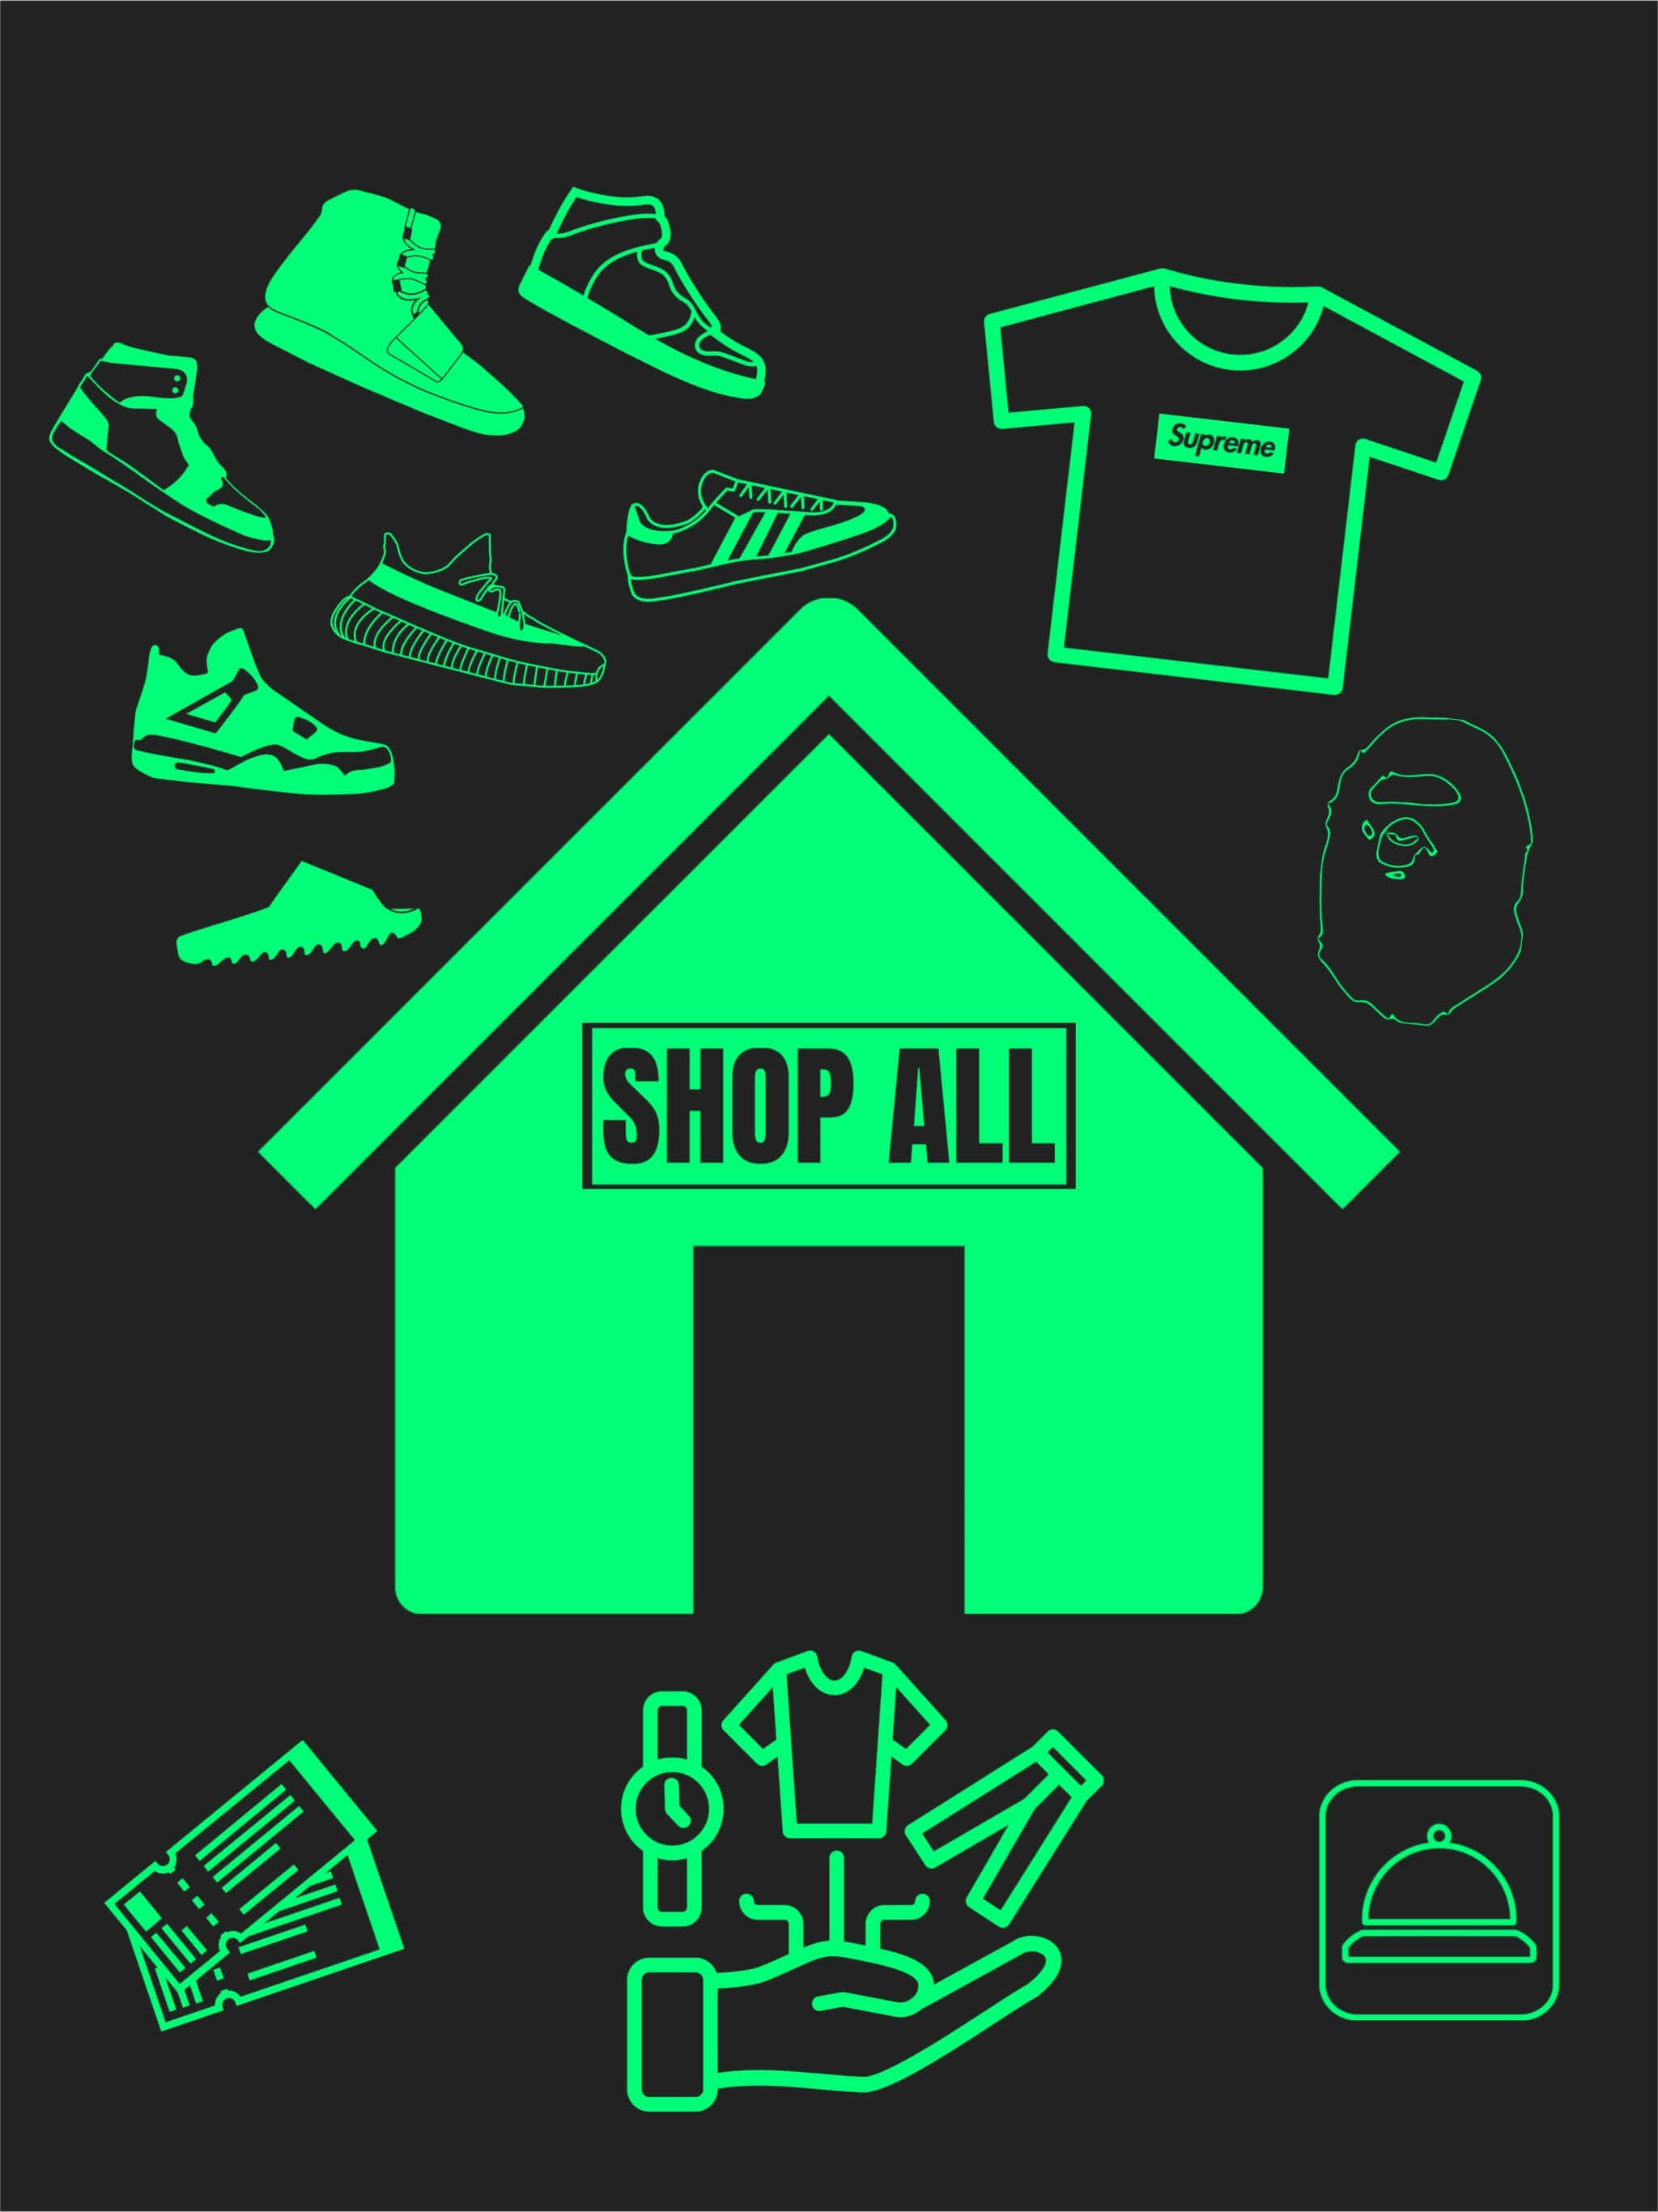 "Shop All"